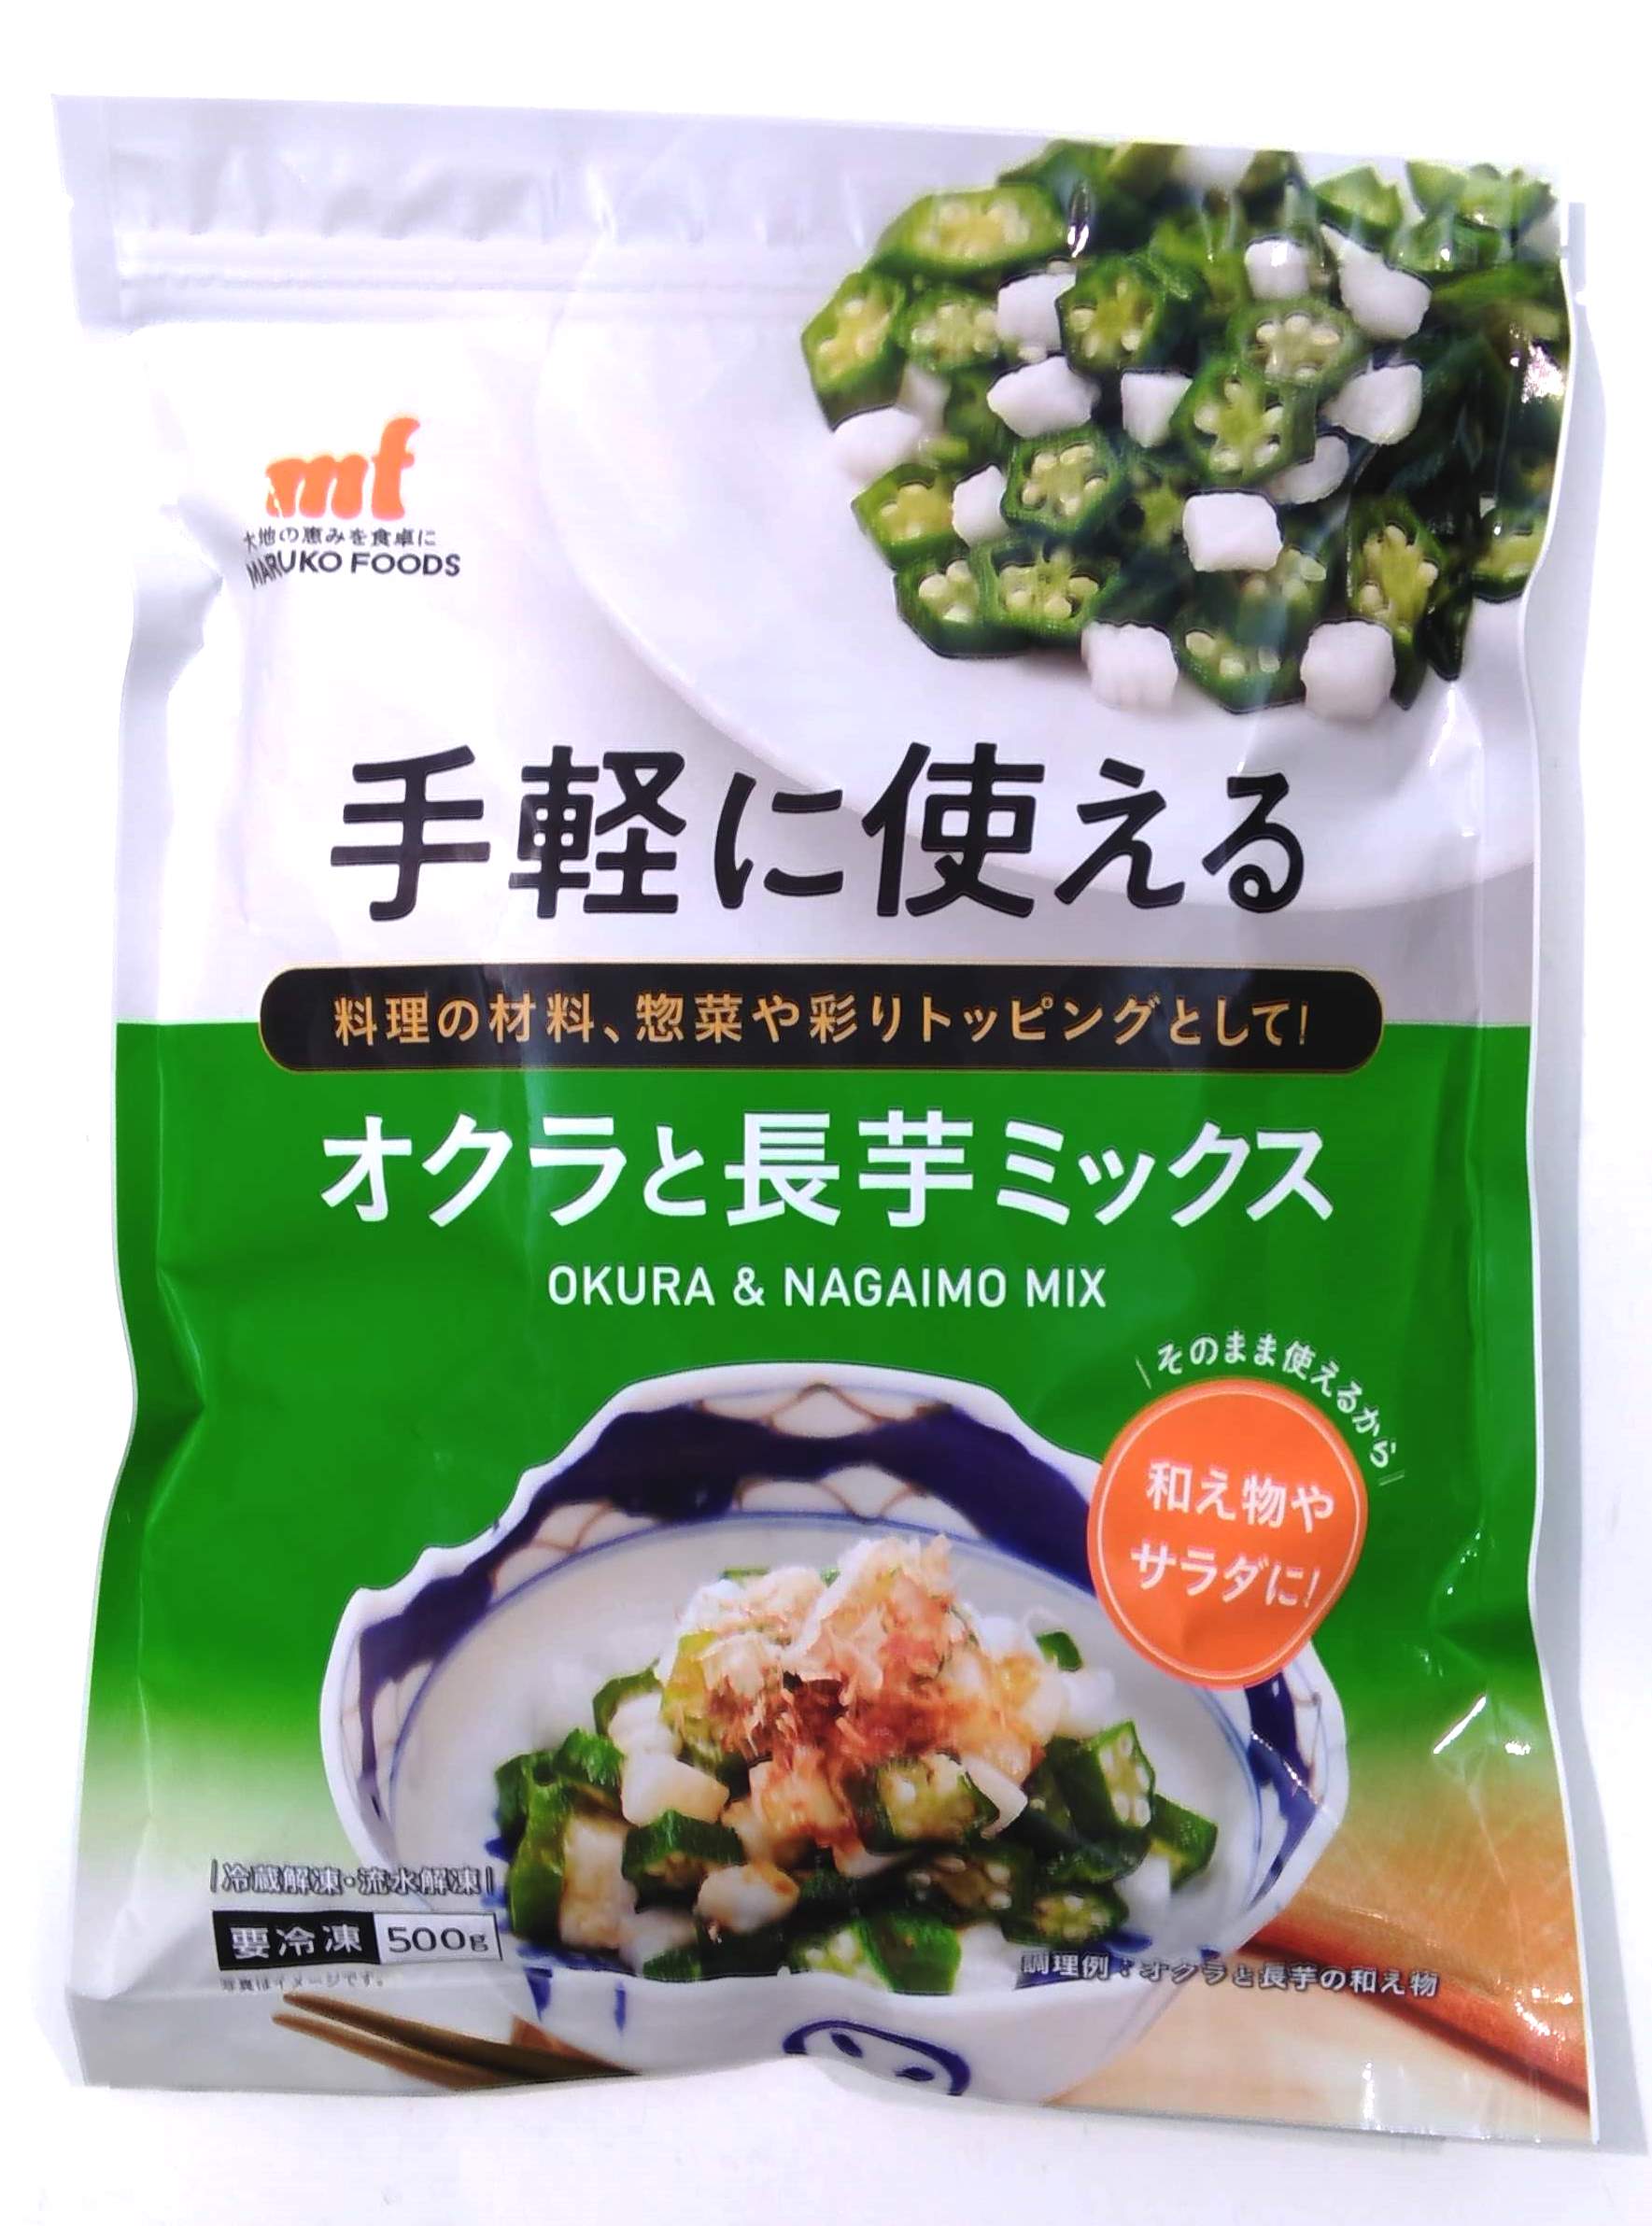  okro .... freezing easily possible to use okro . Chinese yam Mix 500g yam Mix ne spring ba porcelain bowl frozen food 